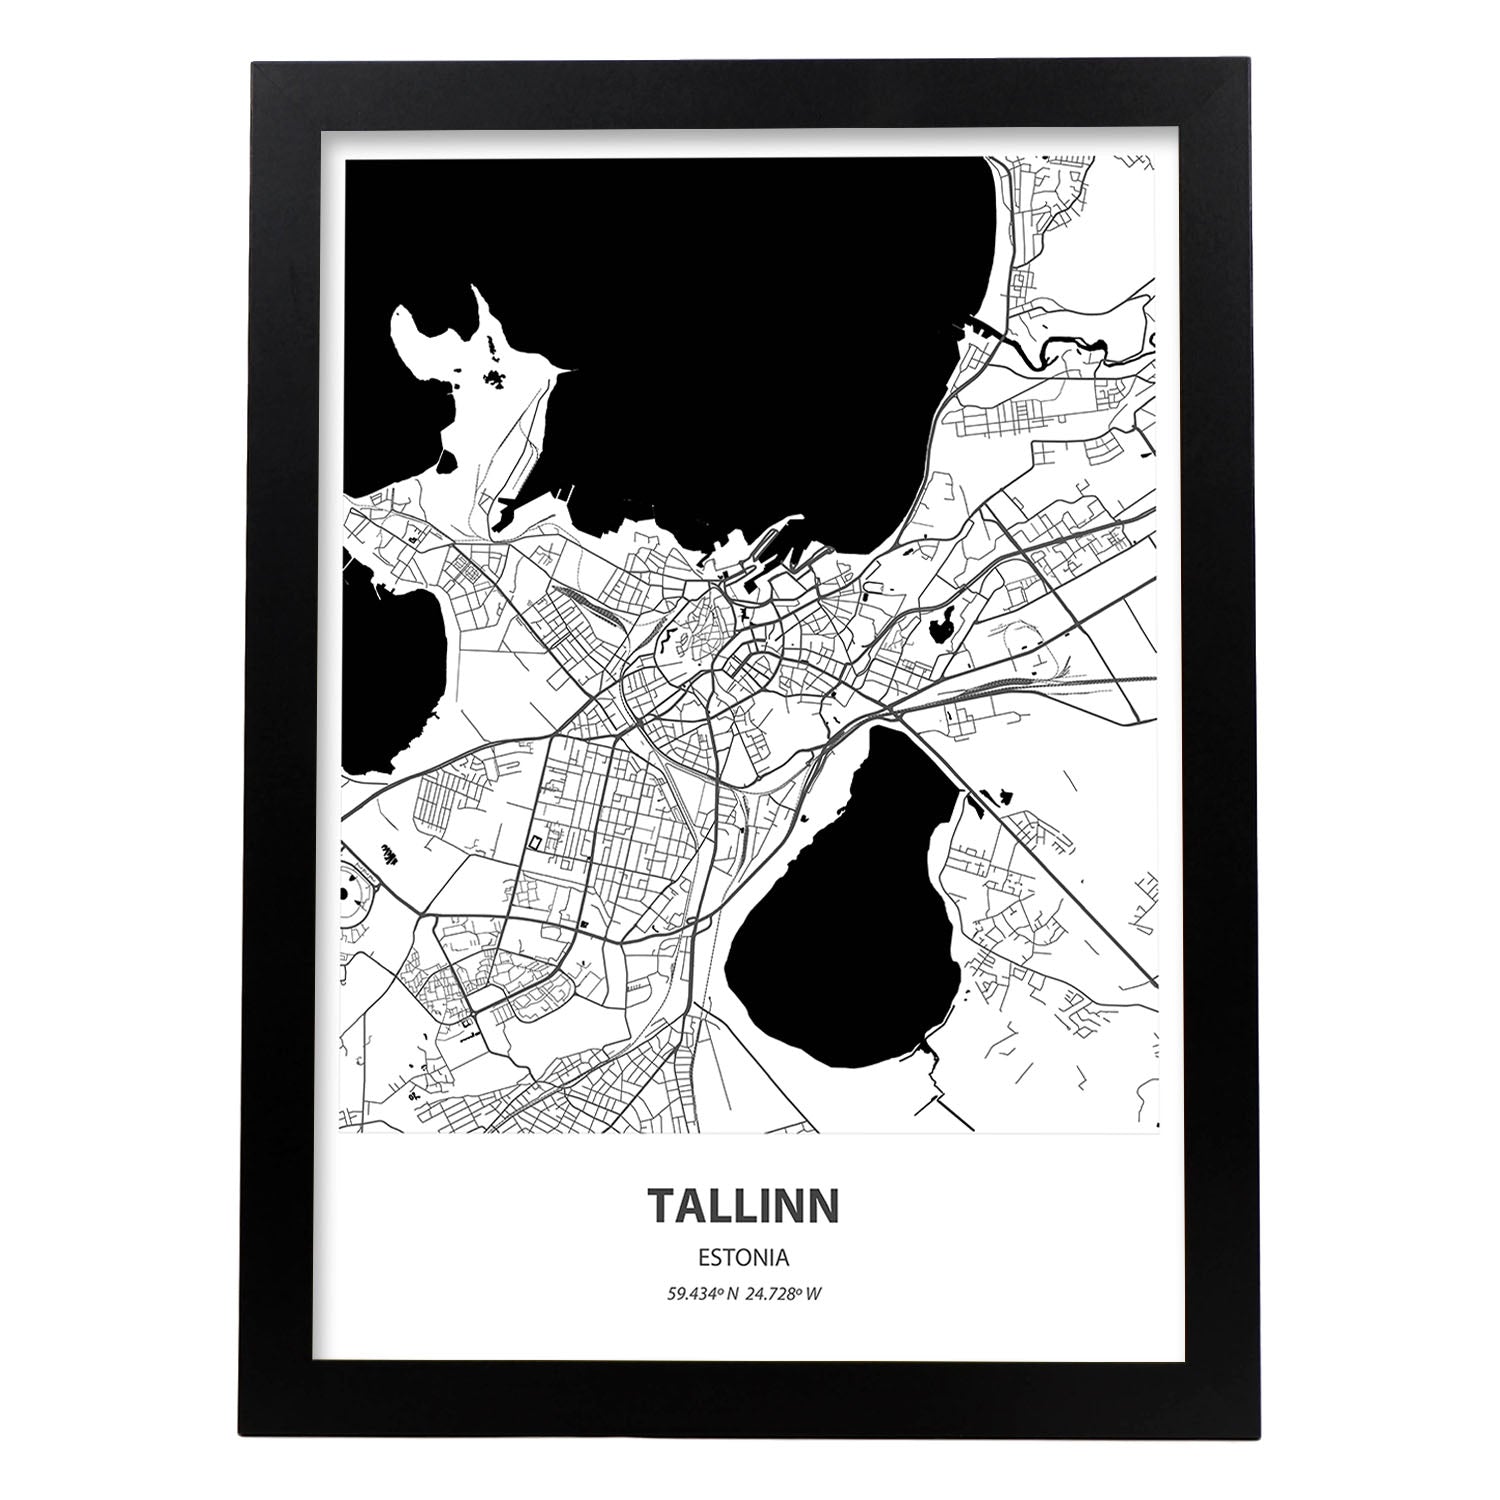 Poster con mapa de Tallinn - Estonia. Láminas de ciudades del norte de Europa con mares y ríos en color negro.-Artwork-Nacnic-A3-Marco Negro-Nacnic Estudio SL